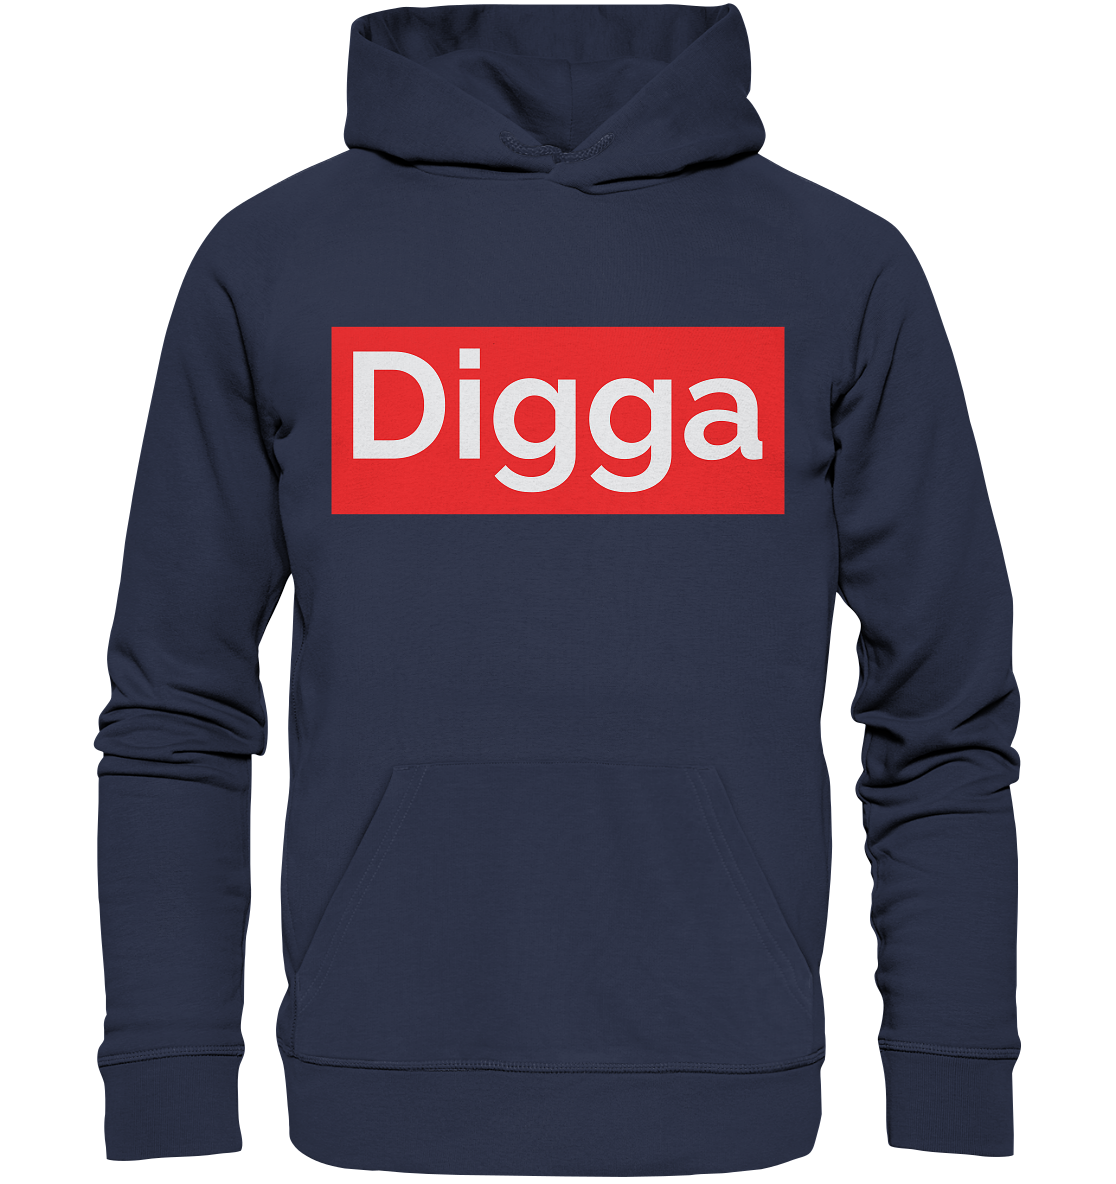 DIGGA - Premium Unisex Hoodie